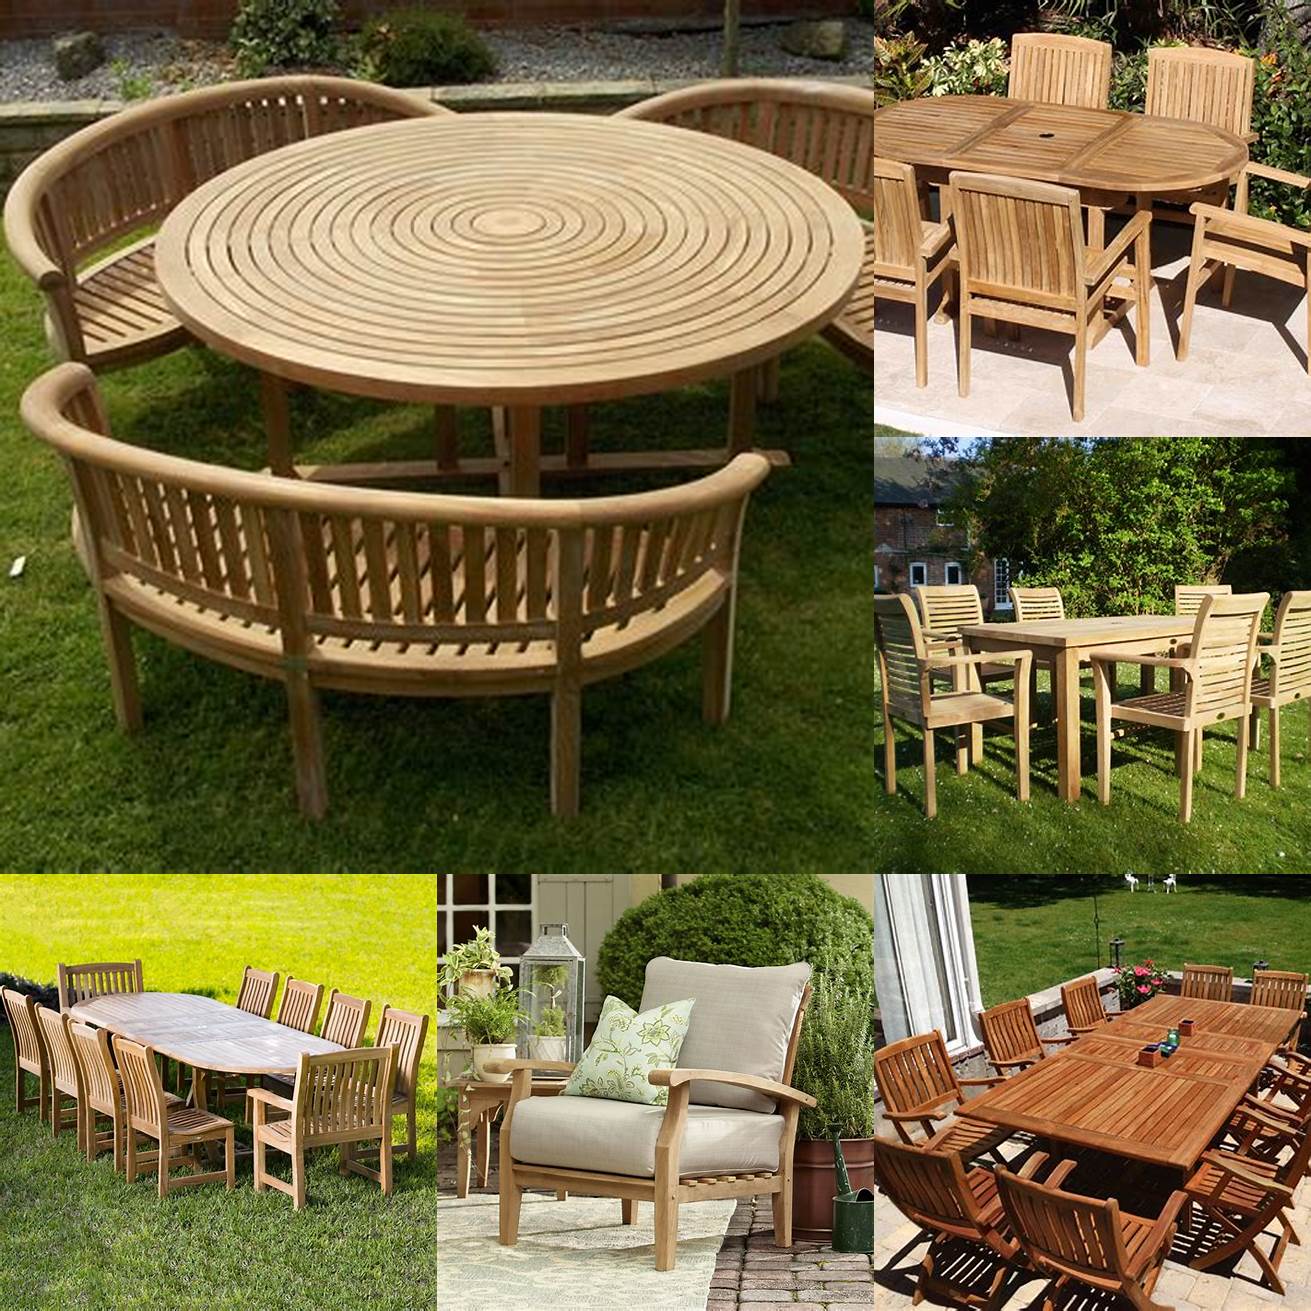 Teak Garden Furniture in Use